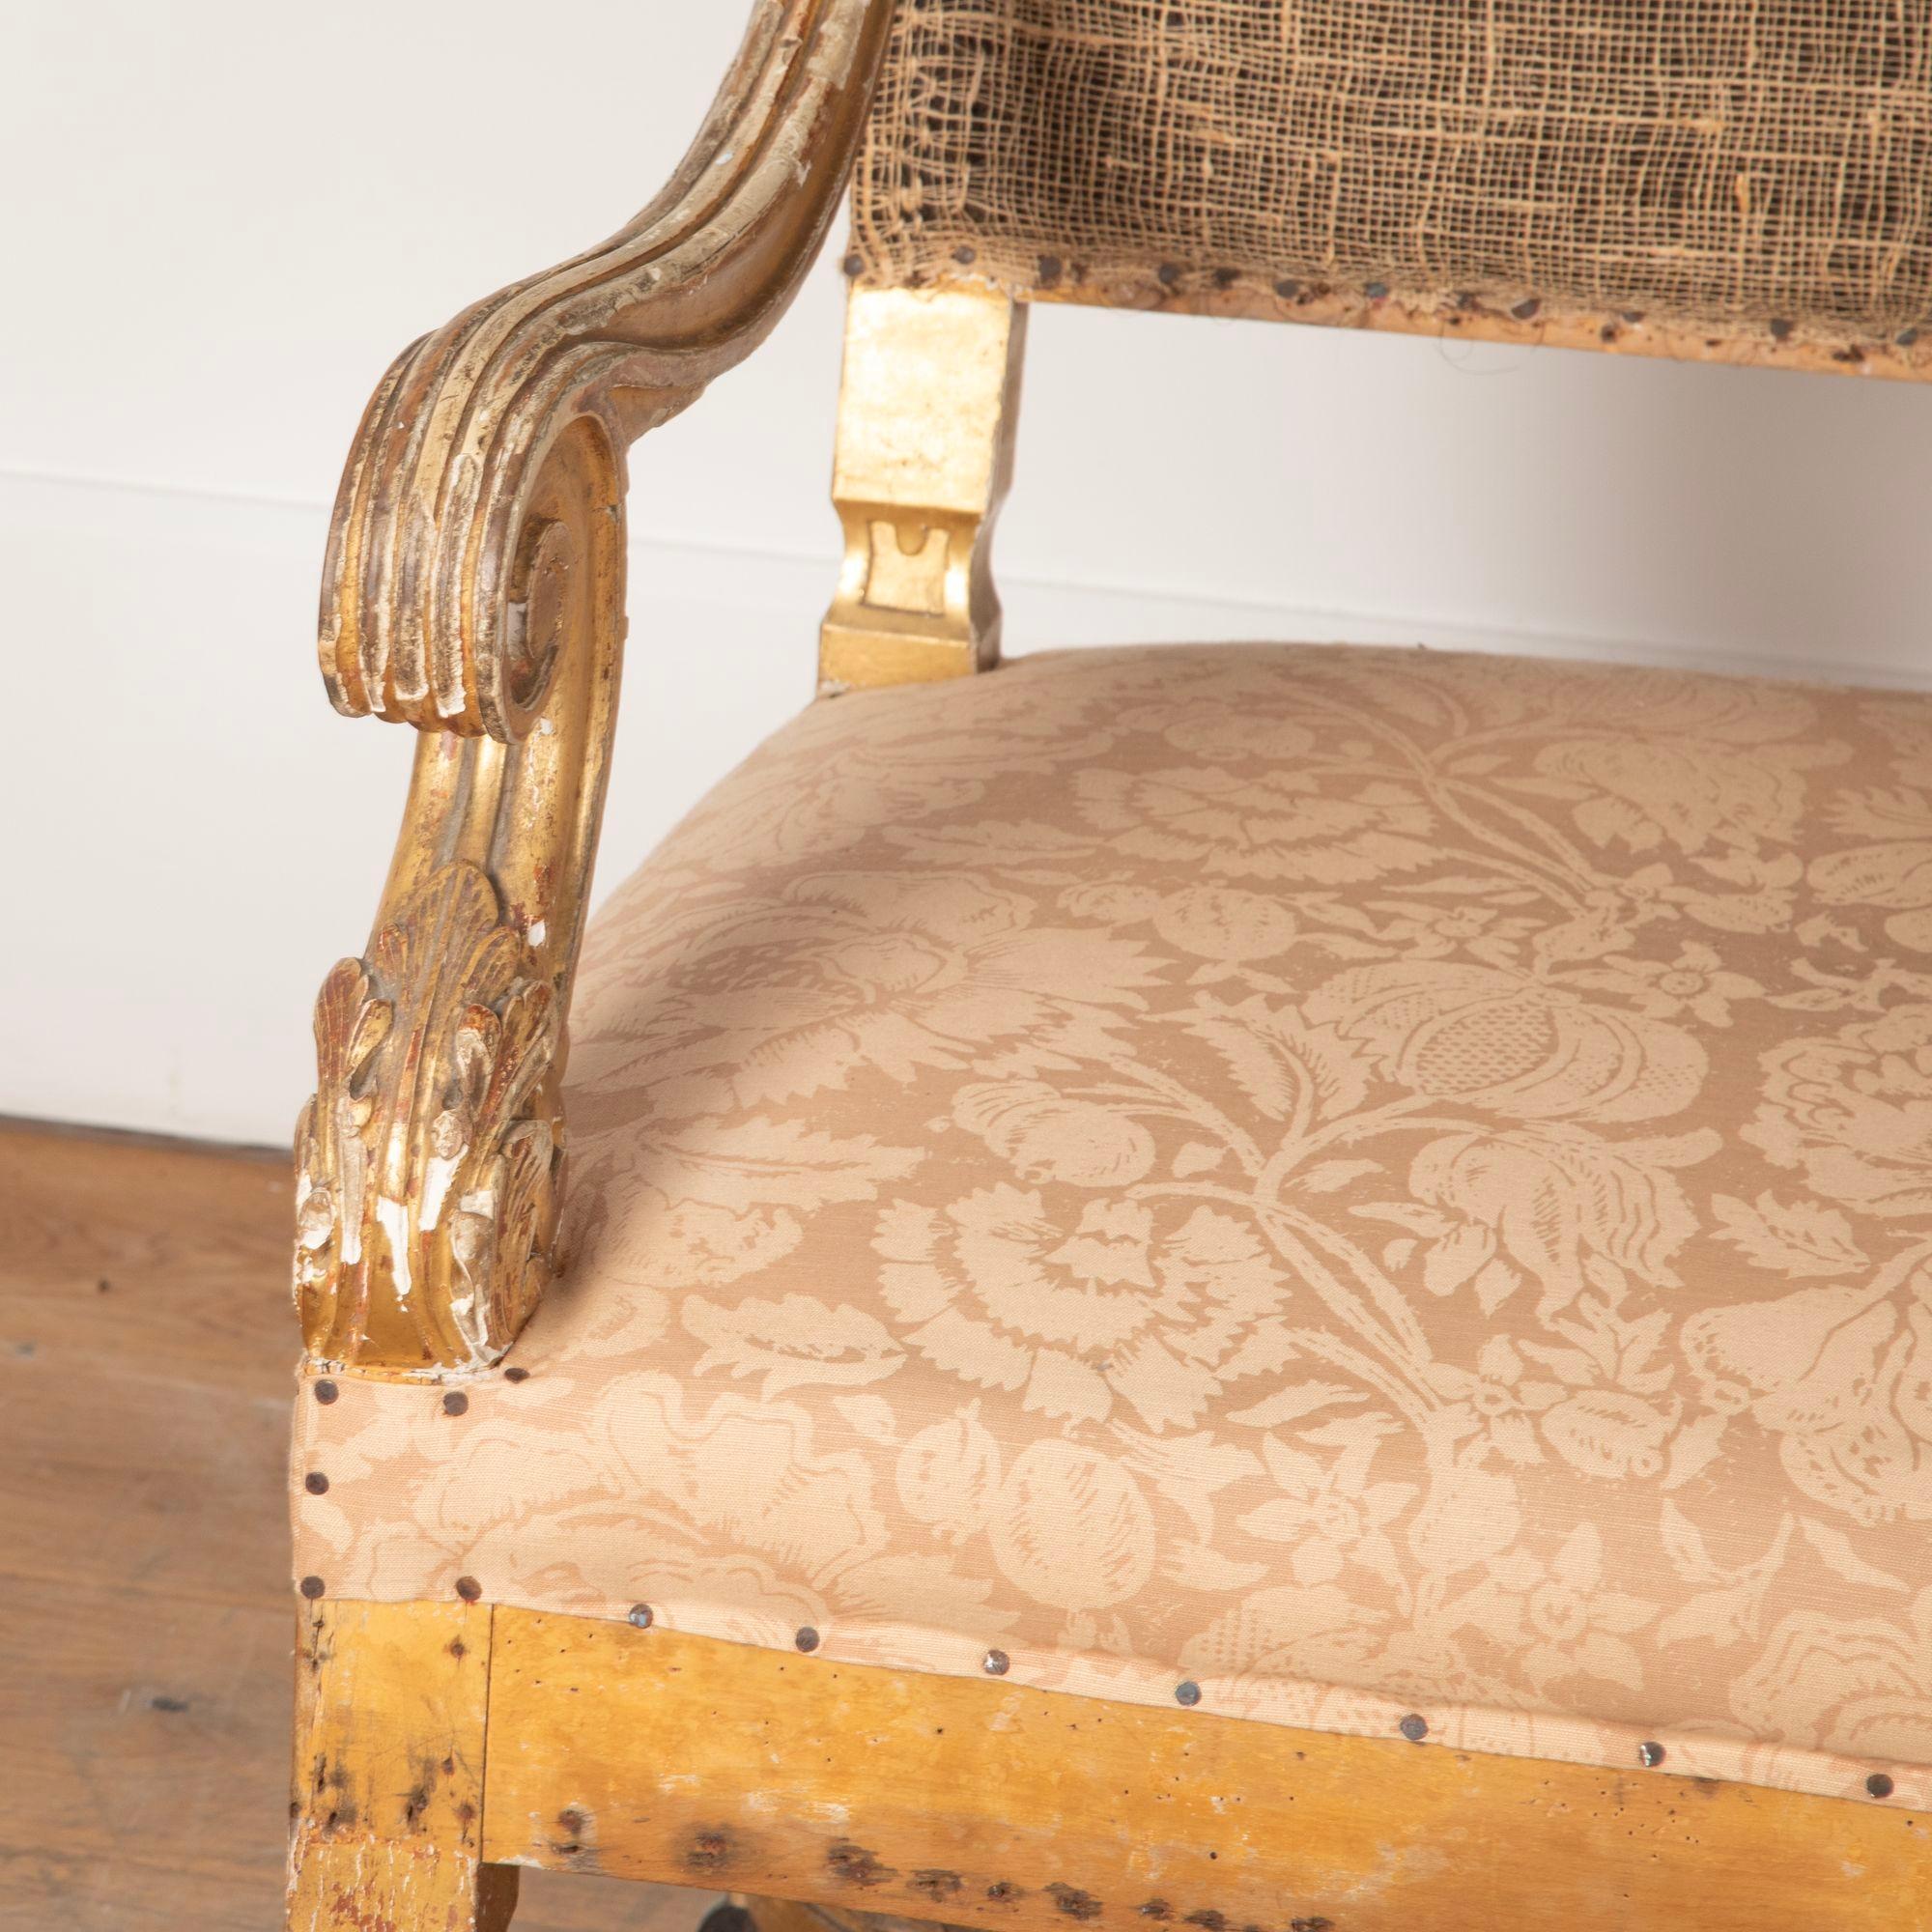 Paire de fauteuils ouverts en bois doré du 19e siècle, de style Louis XIV, avec des châssis en X ondulés.
Avec des signes d'usure, en rapport avec l'âge.